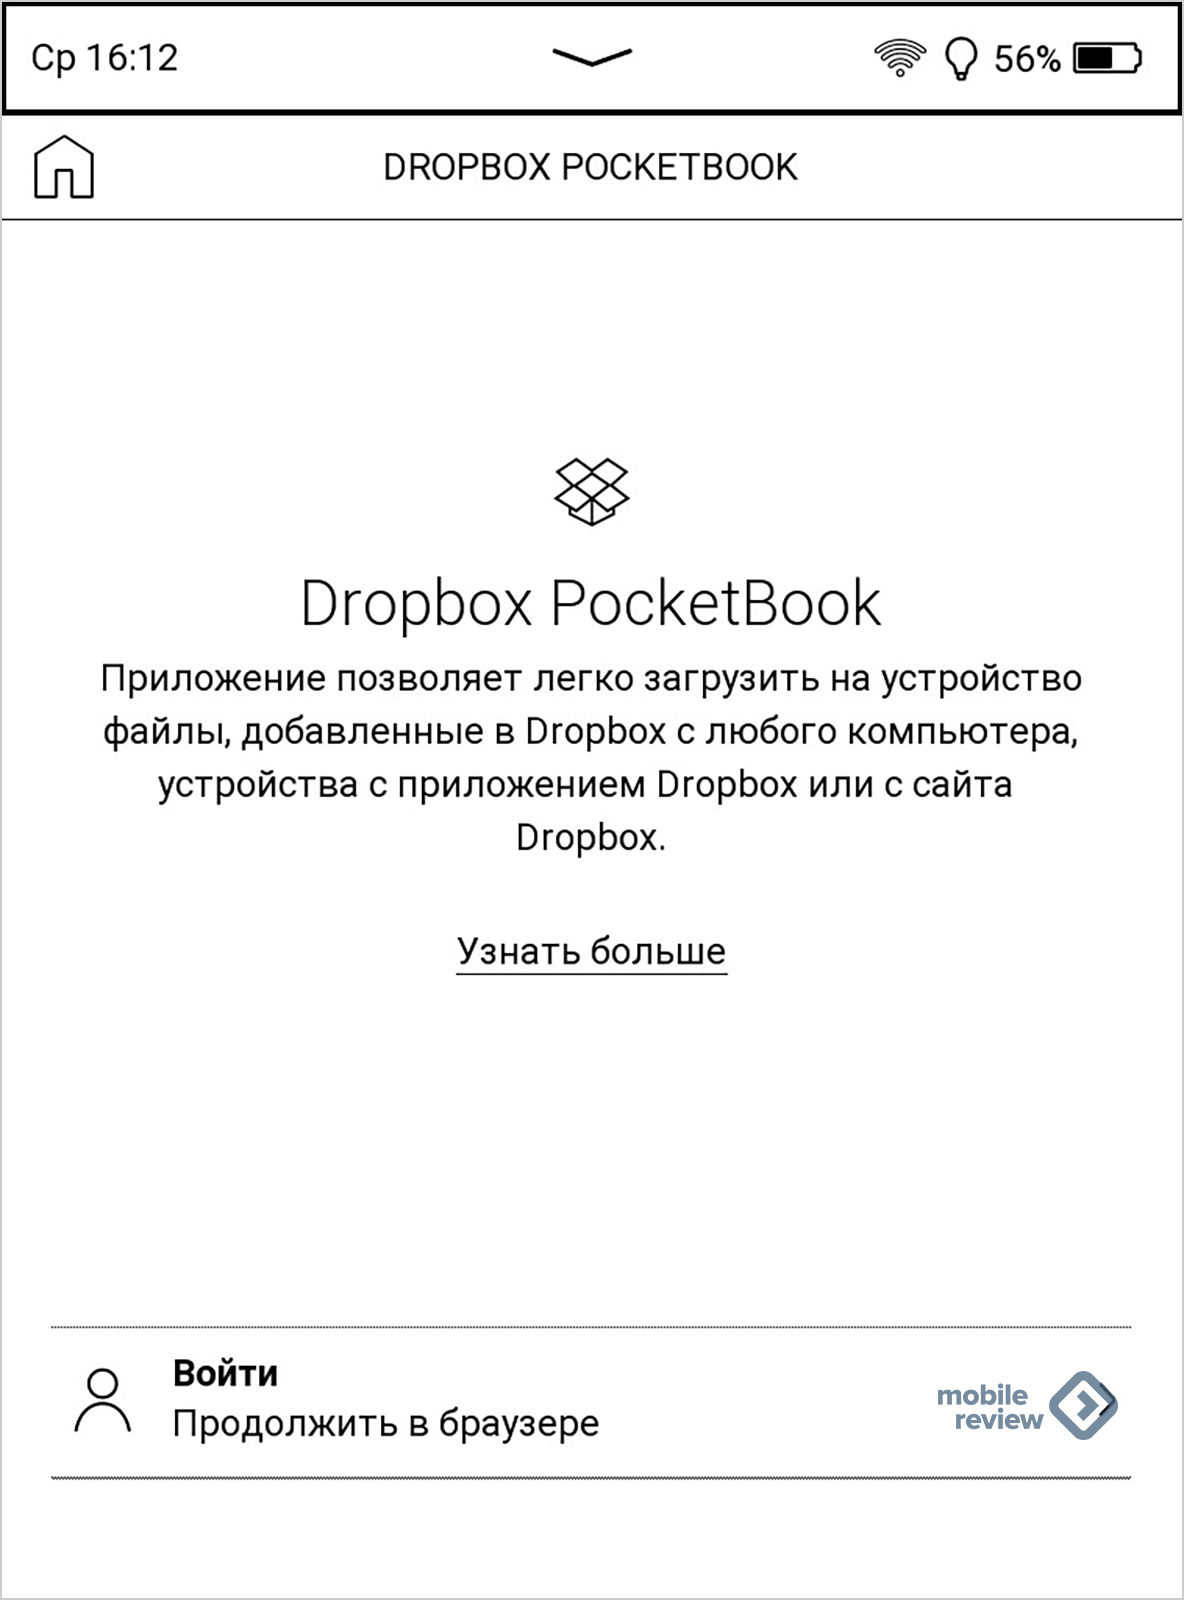 Обзор электронной книги PocketBook 617